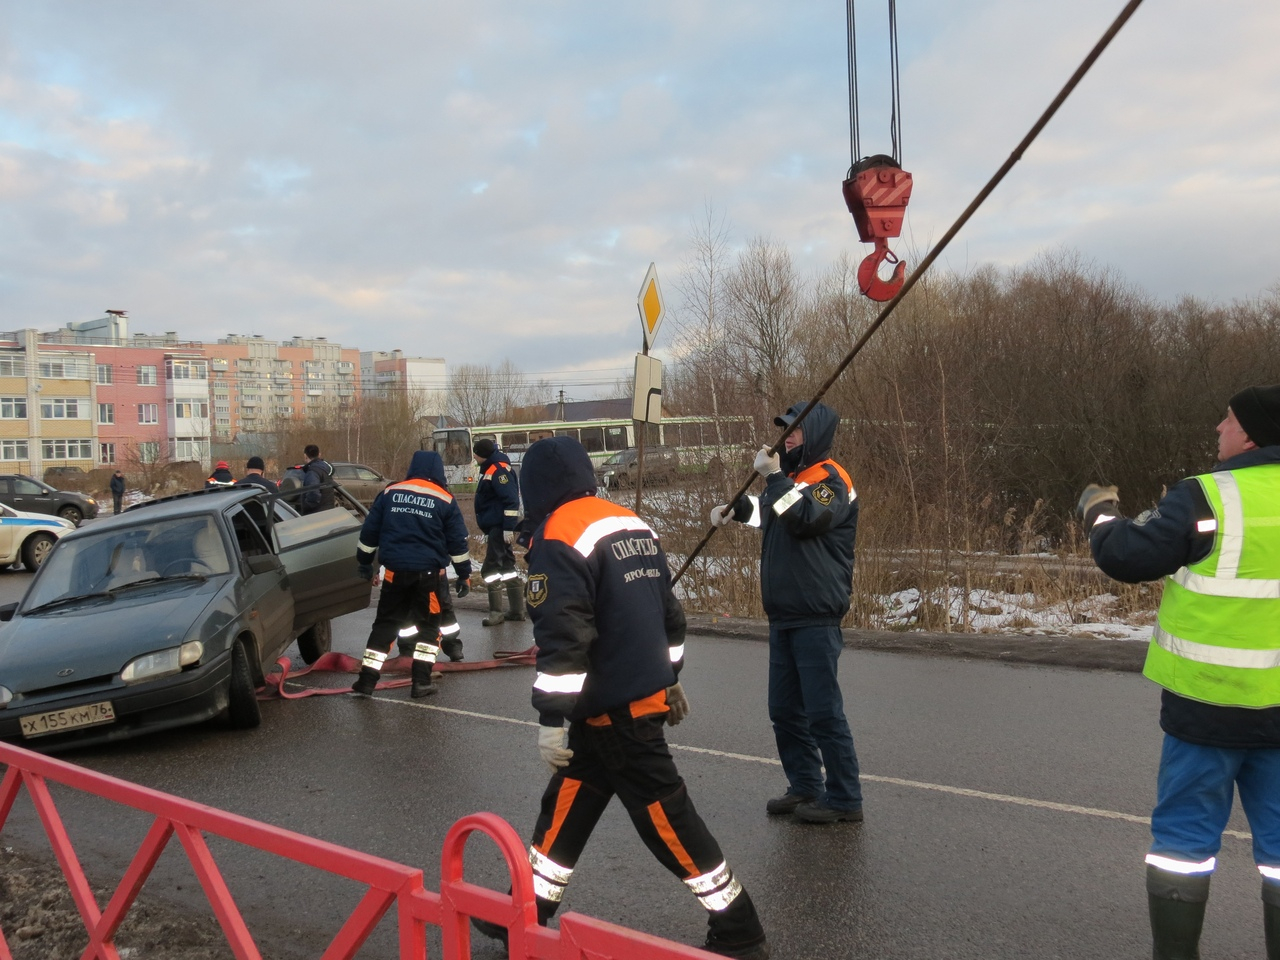 Авто ушло под землю: провал на дороге парализовал движение в Ярославле. Кадры